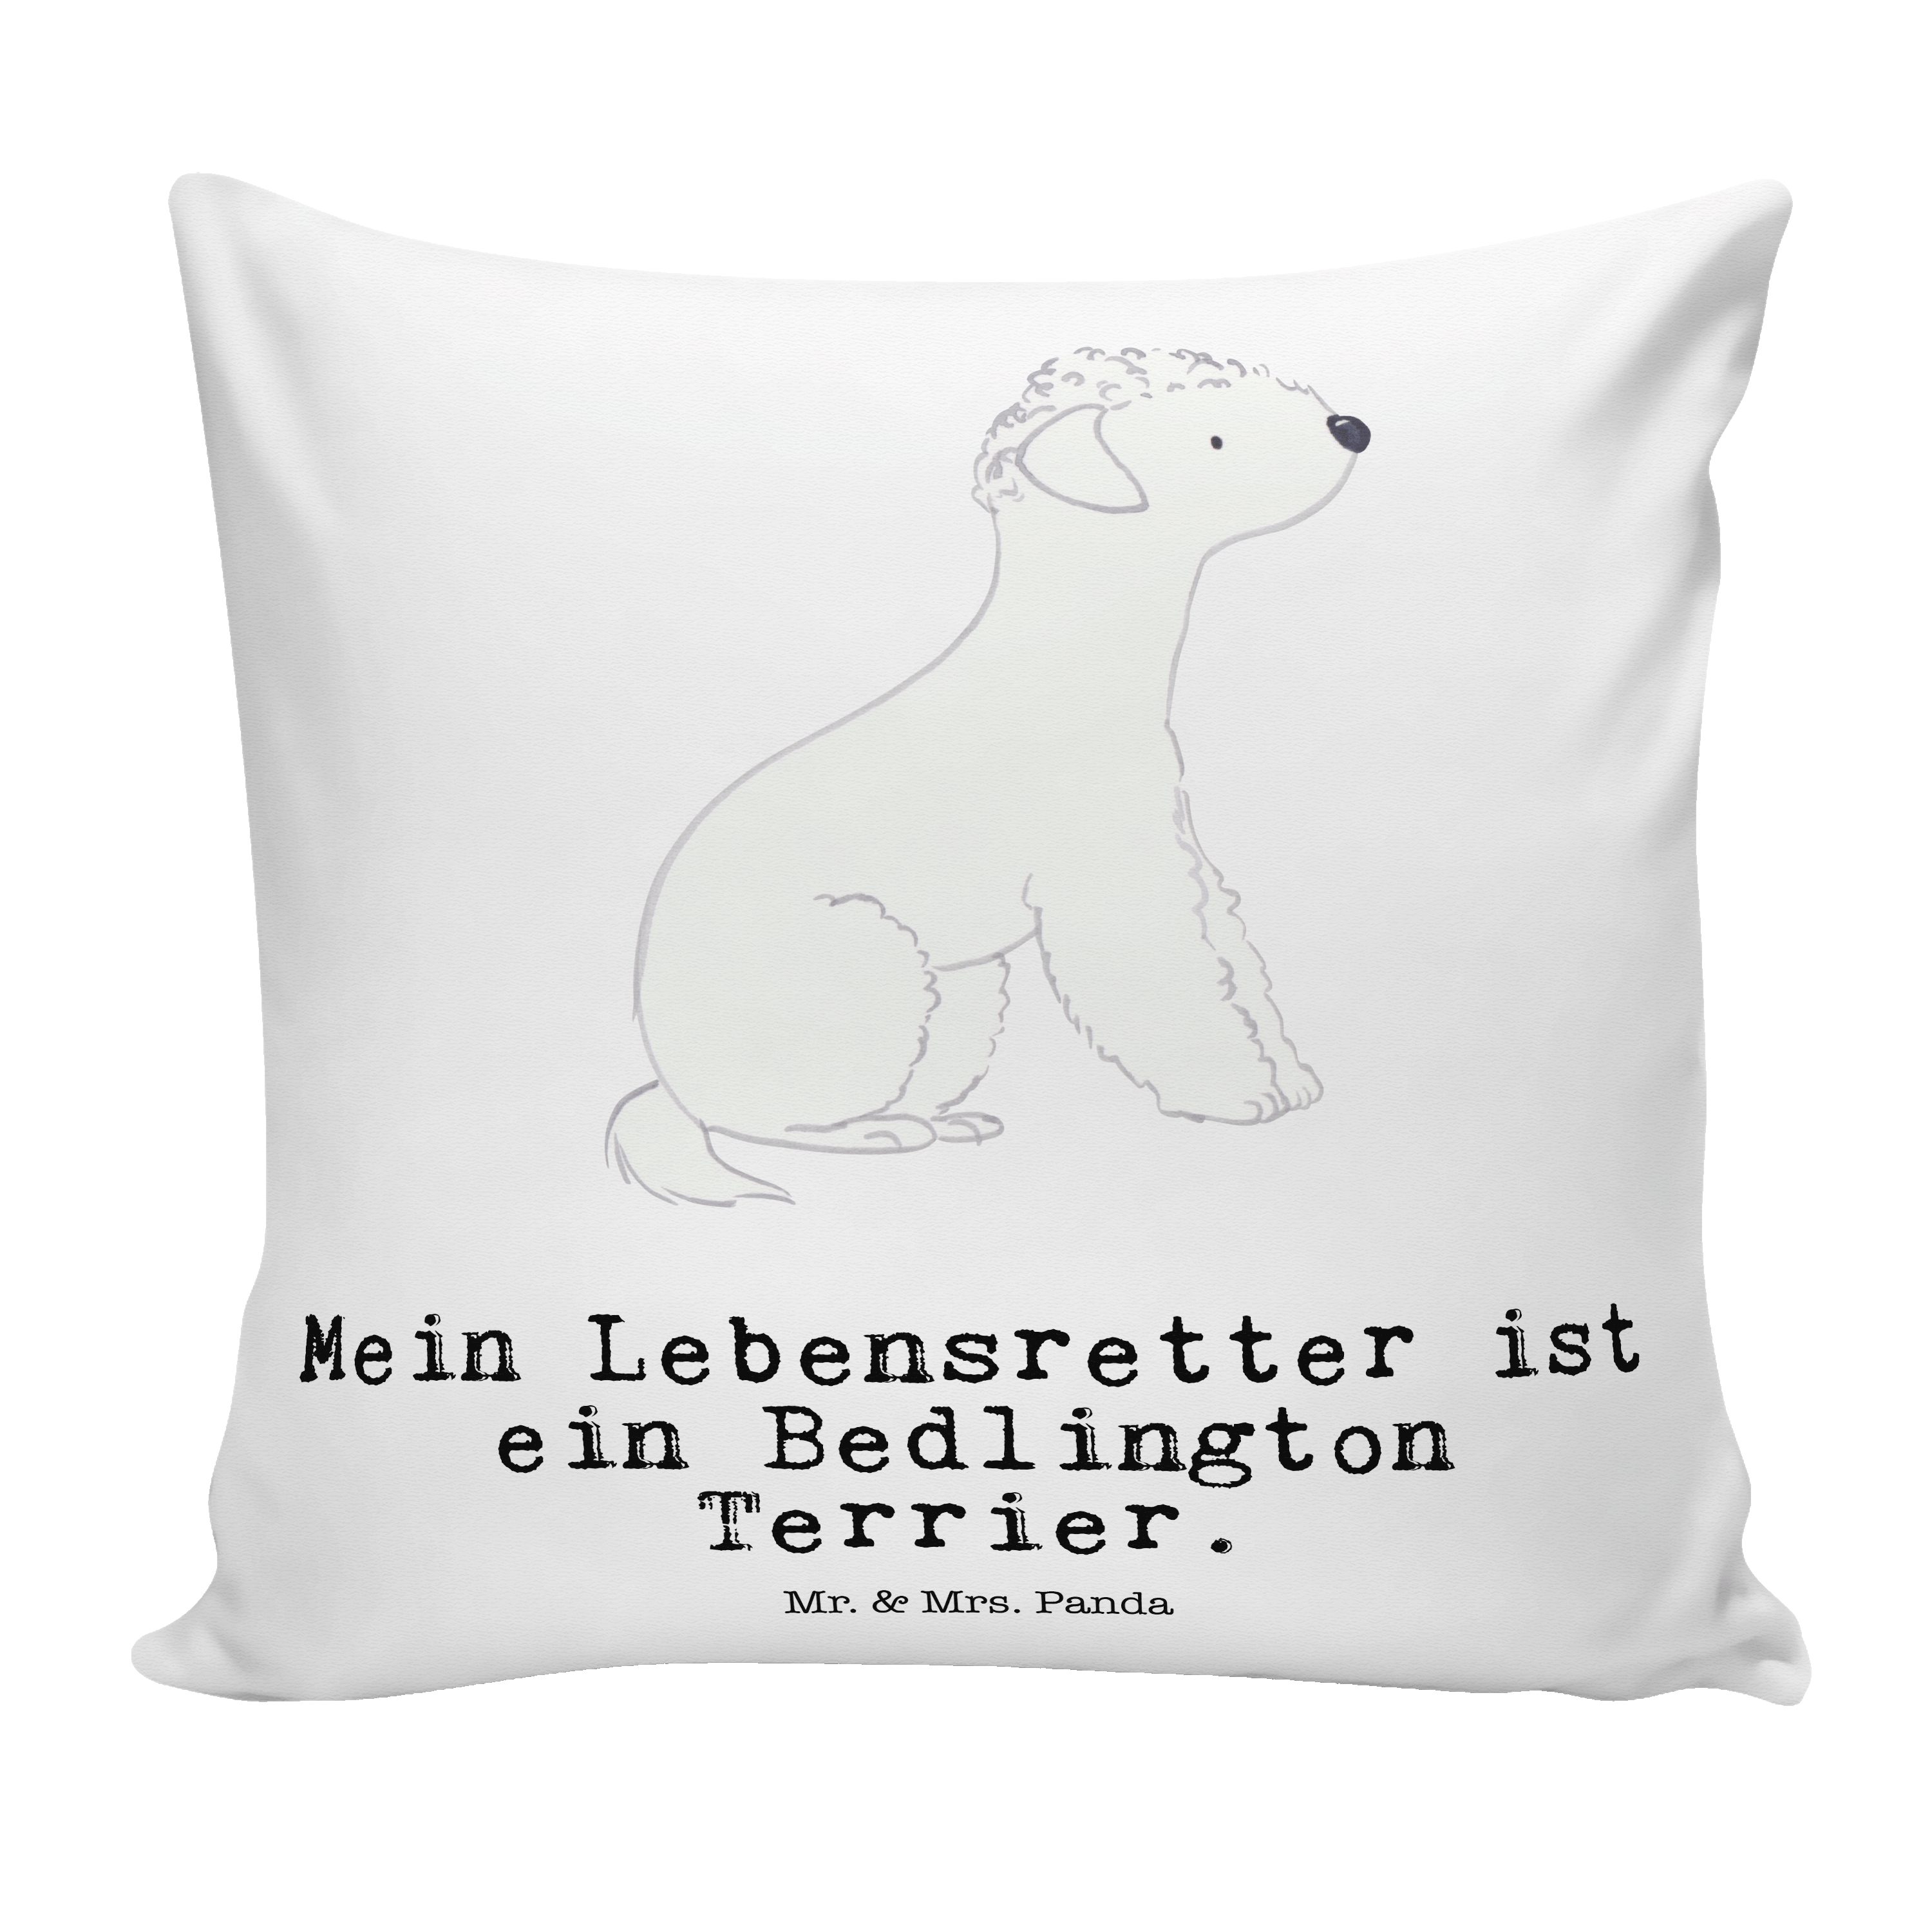 Mr. & Mrs. Panda Dekokissen Bedlington Terrier Lebensretter - Weiß - Geschenk, Motivkissen, Schen